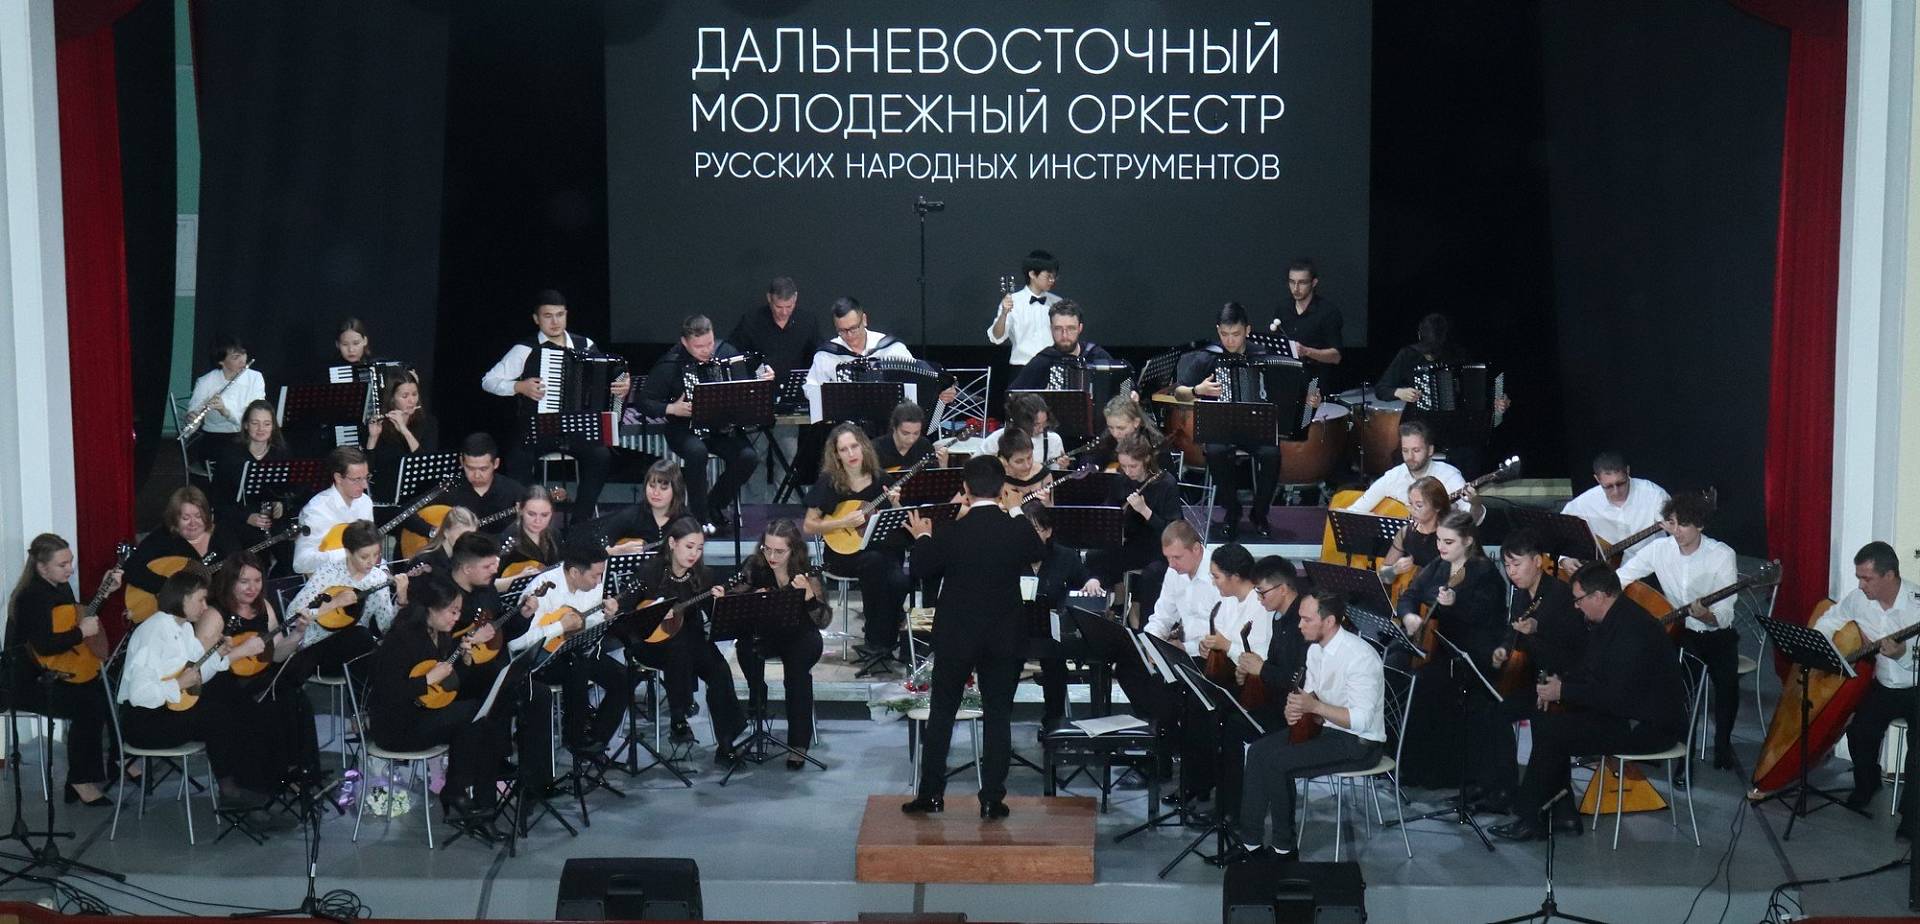 Дальневосточный молодежный оркестр народных инструментов организует концерты в Якутии